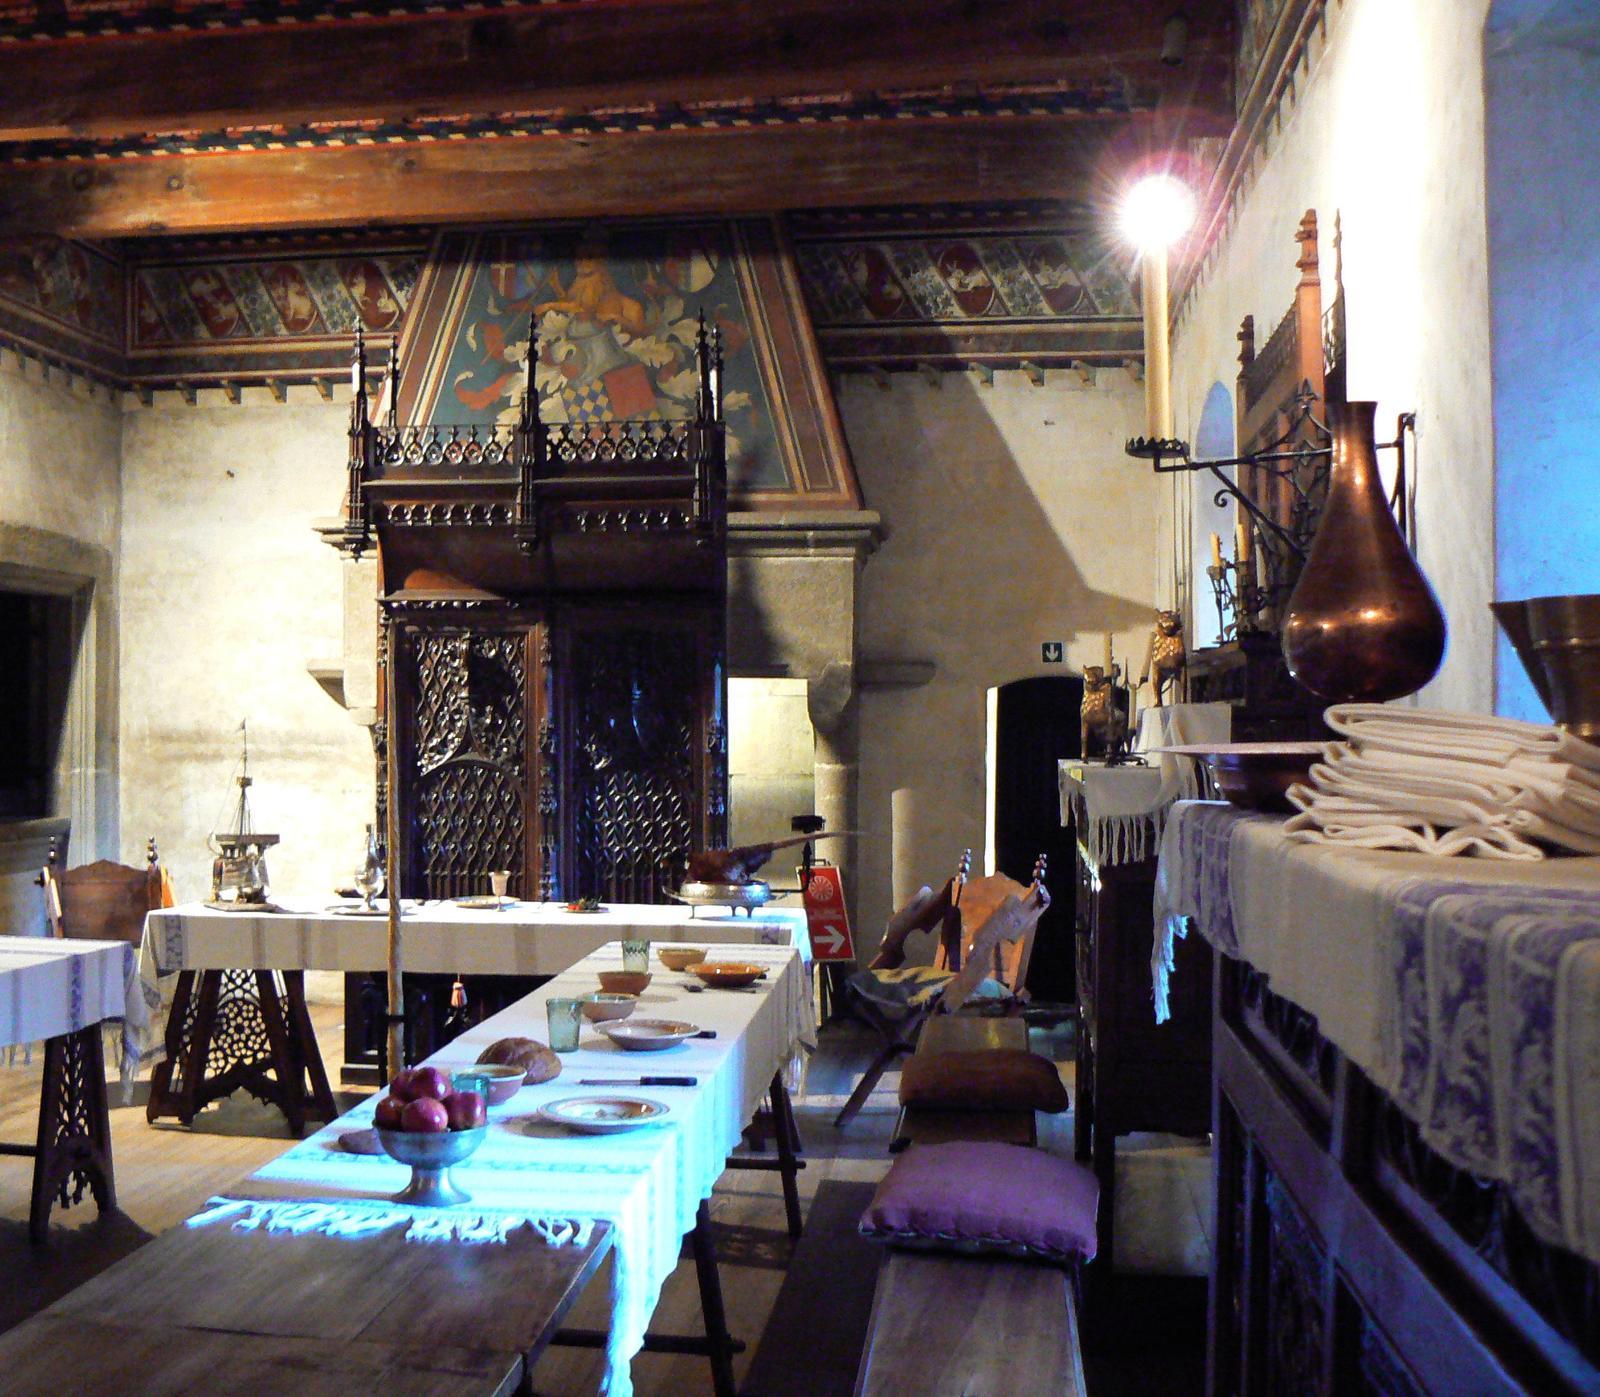 Medieval Village, dining Hall